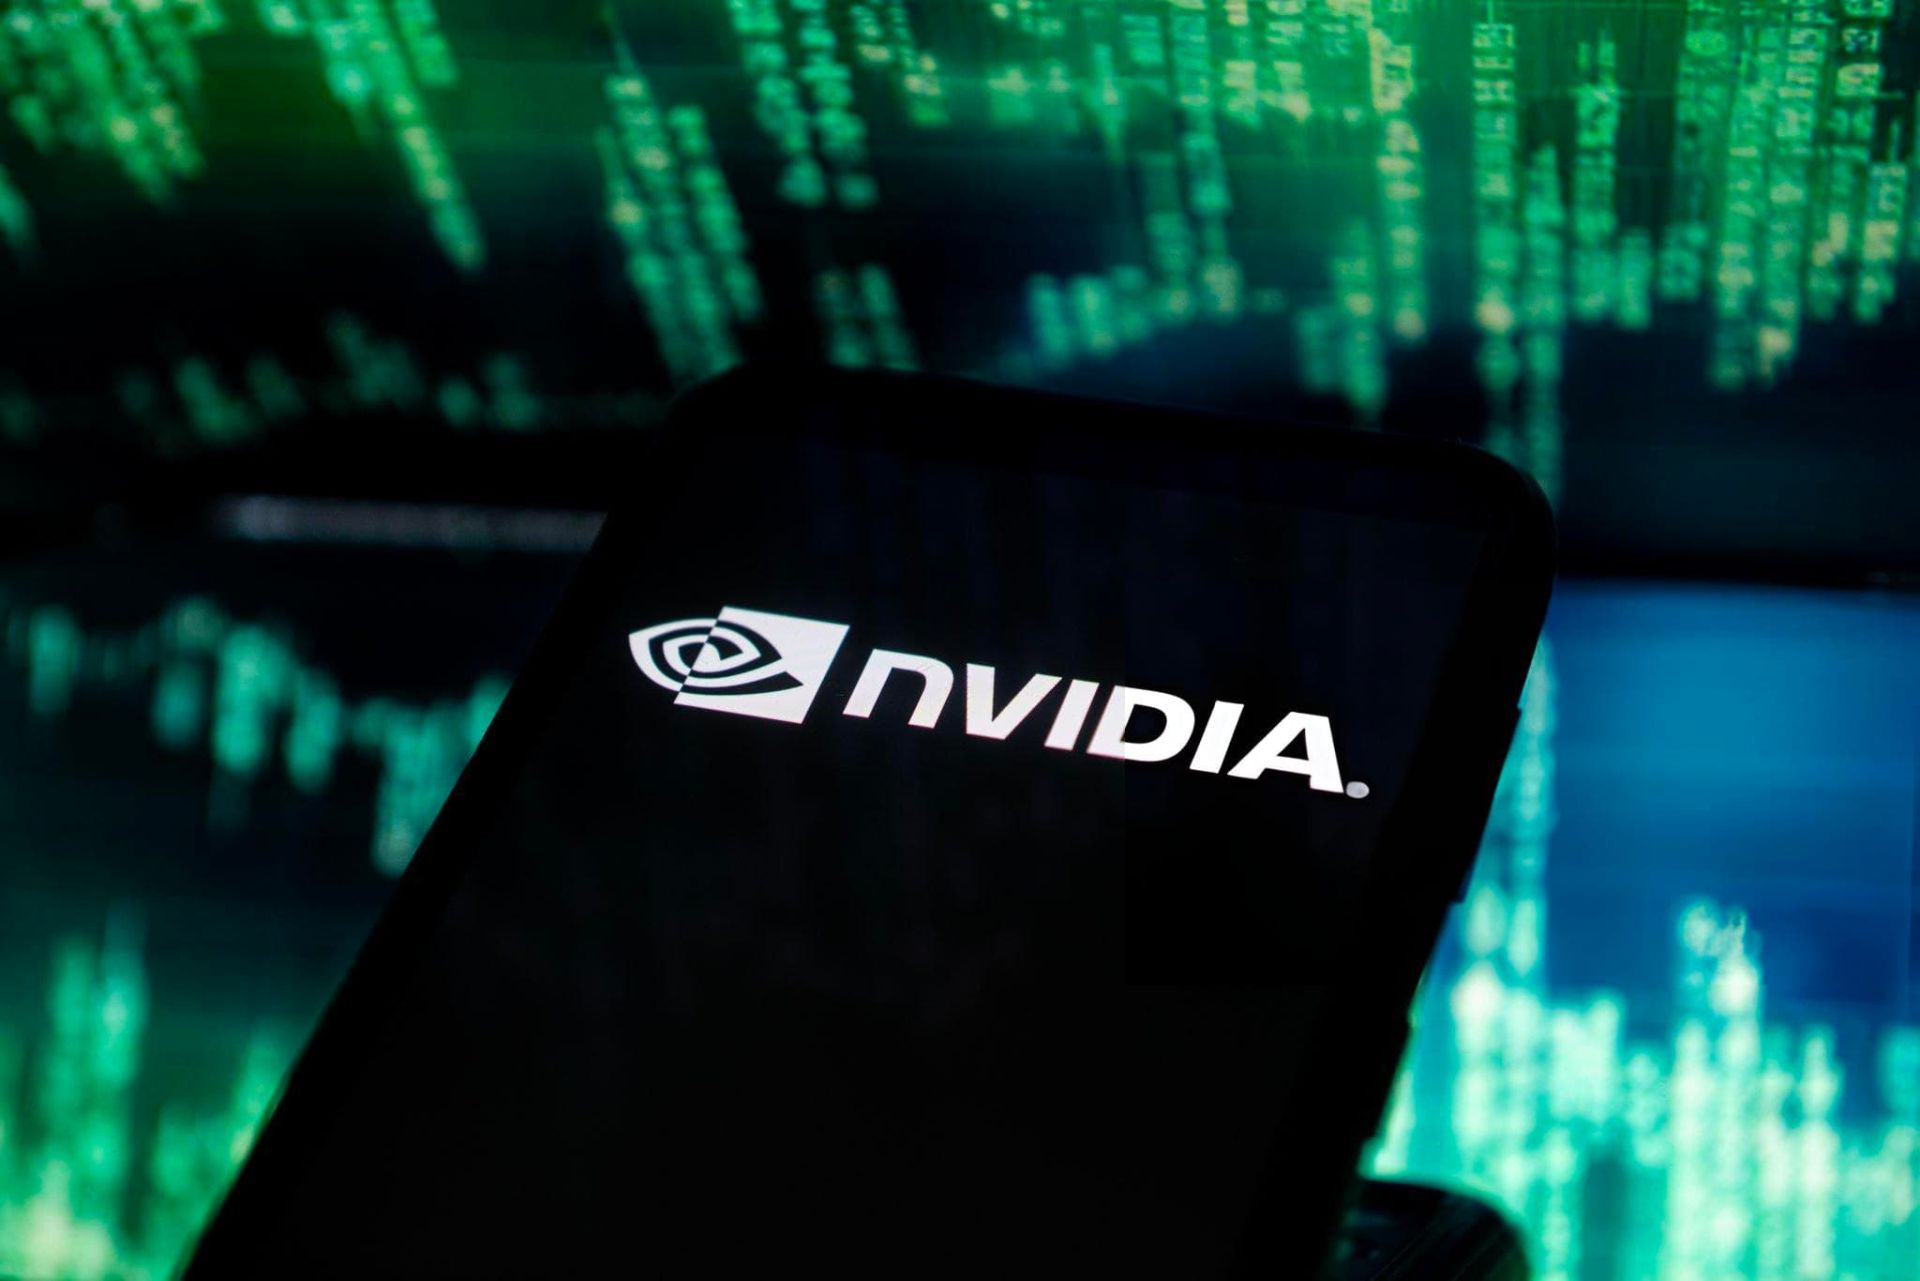 لوگو انویدیا / Nvidia روی صفحه موبایل دربرابر صفحه سبز